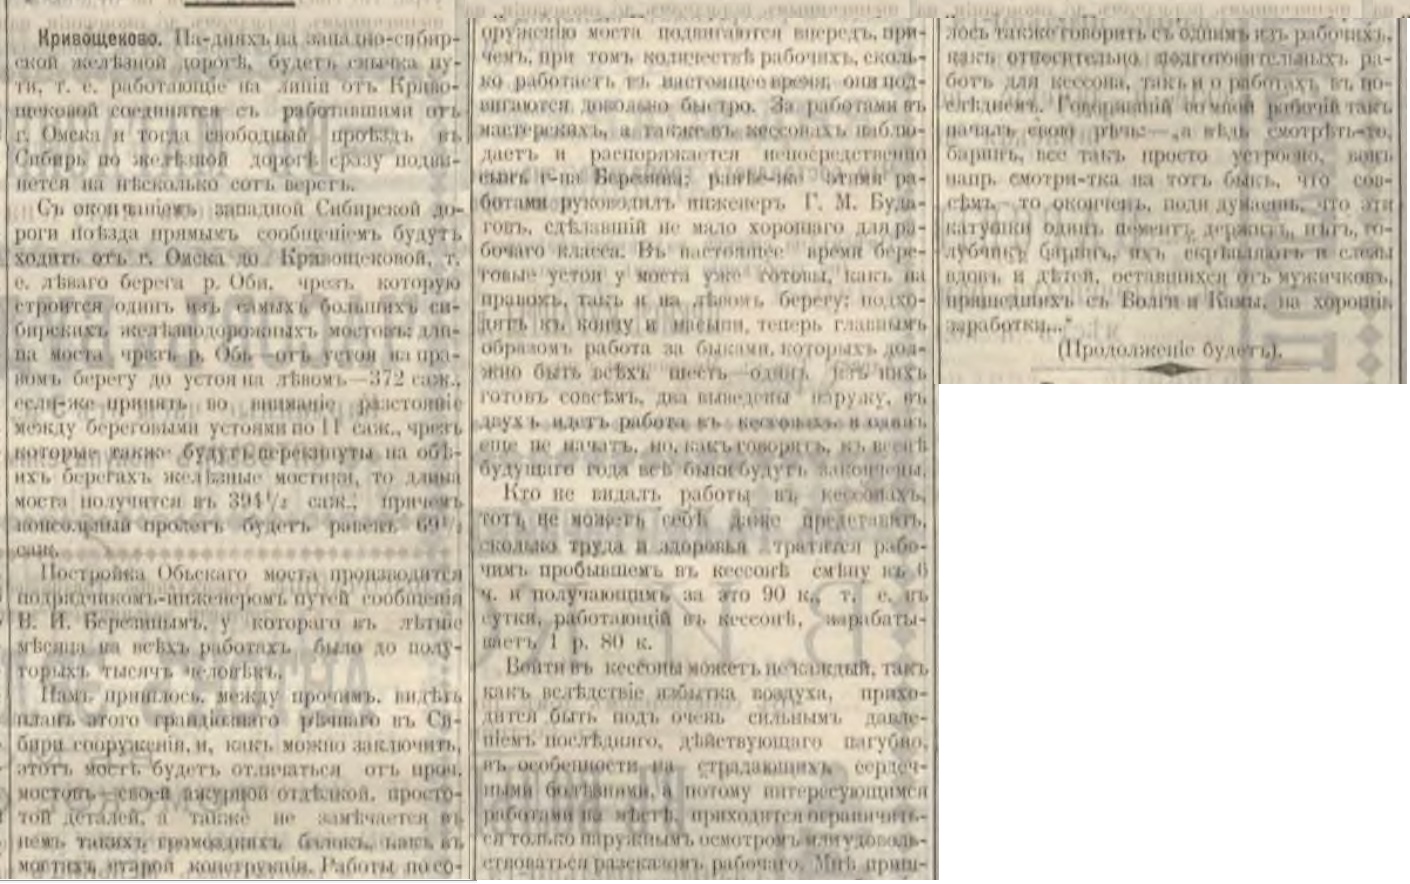 Сибирский вестник №99 25 августа 1895